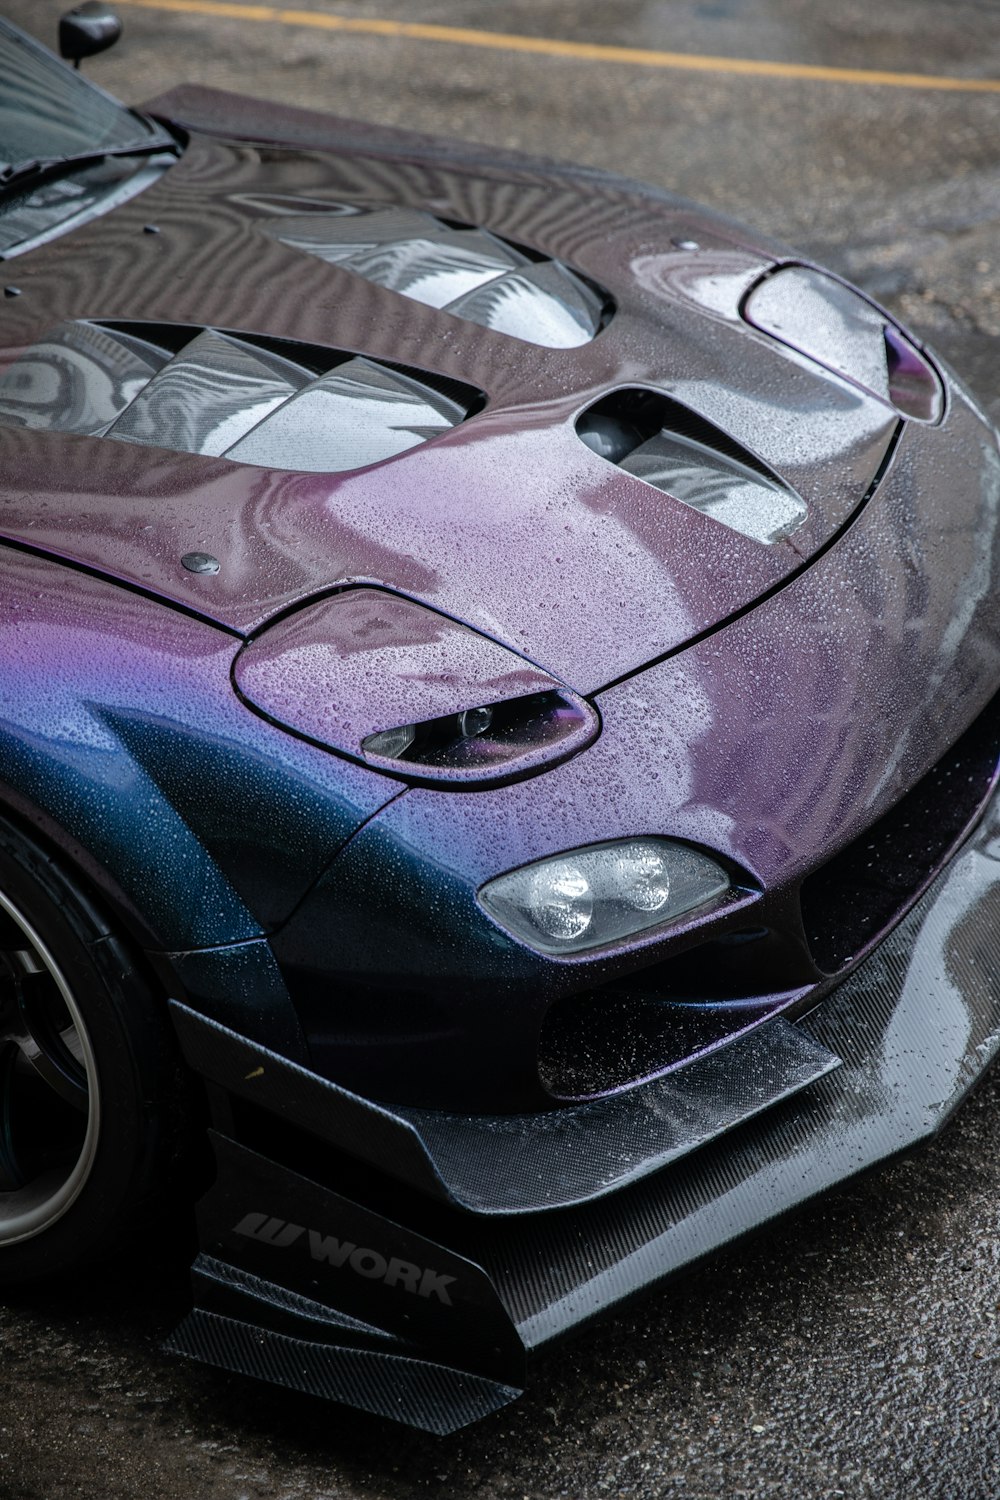 purple sports car